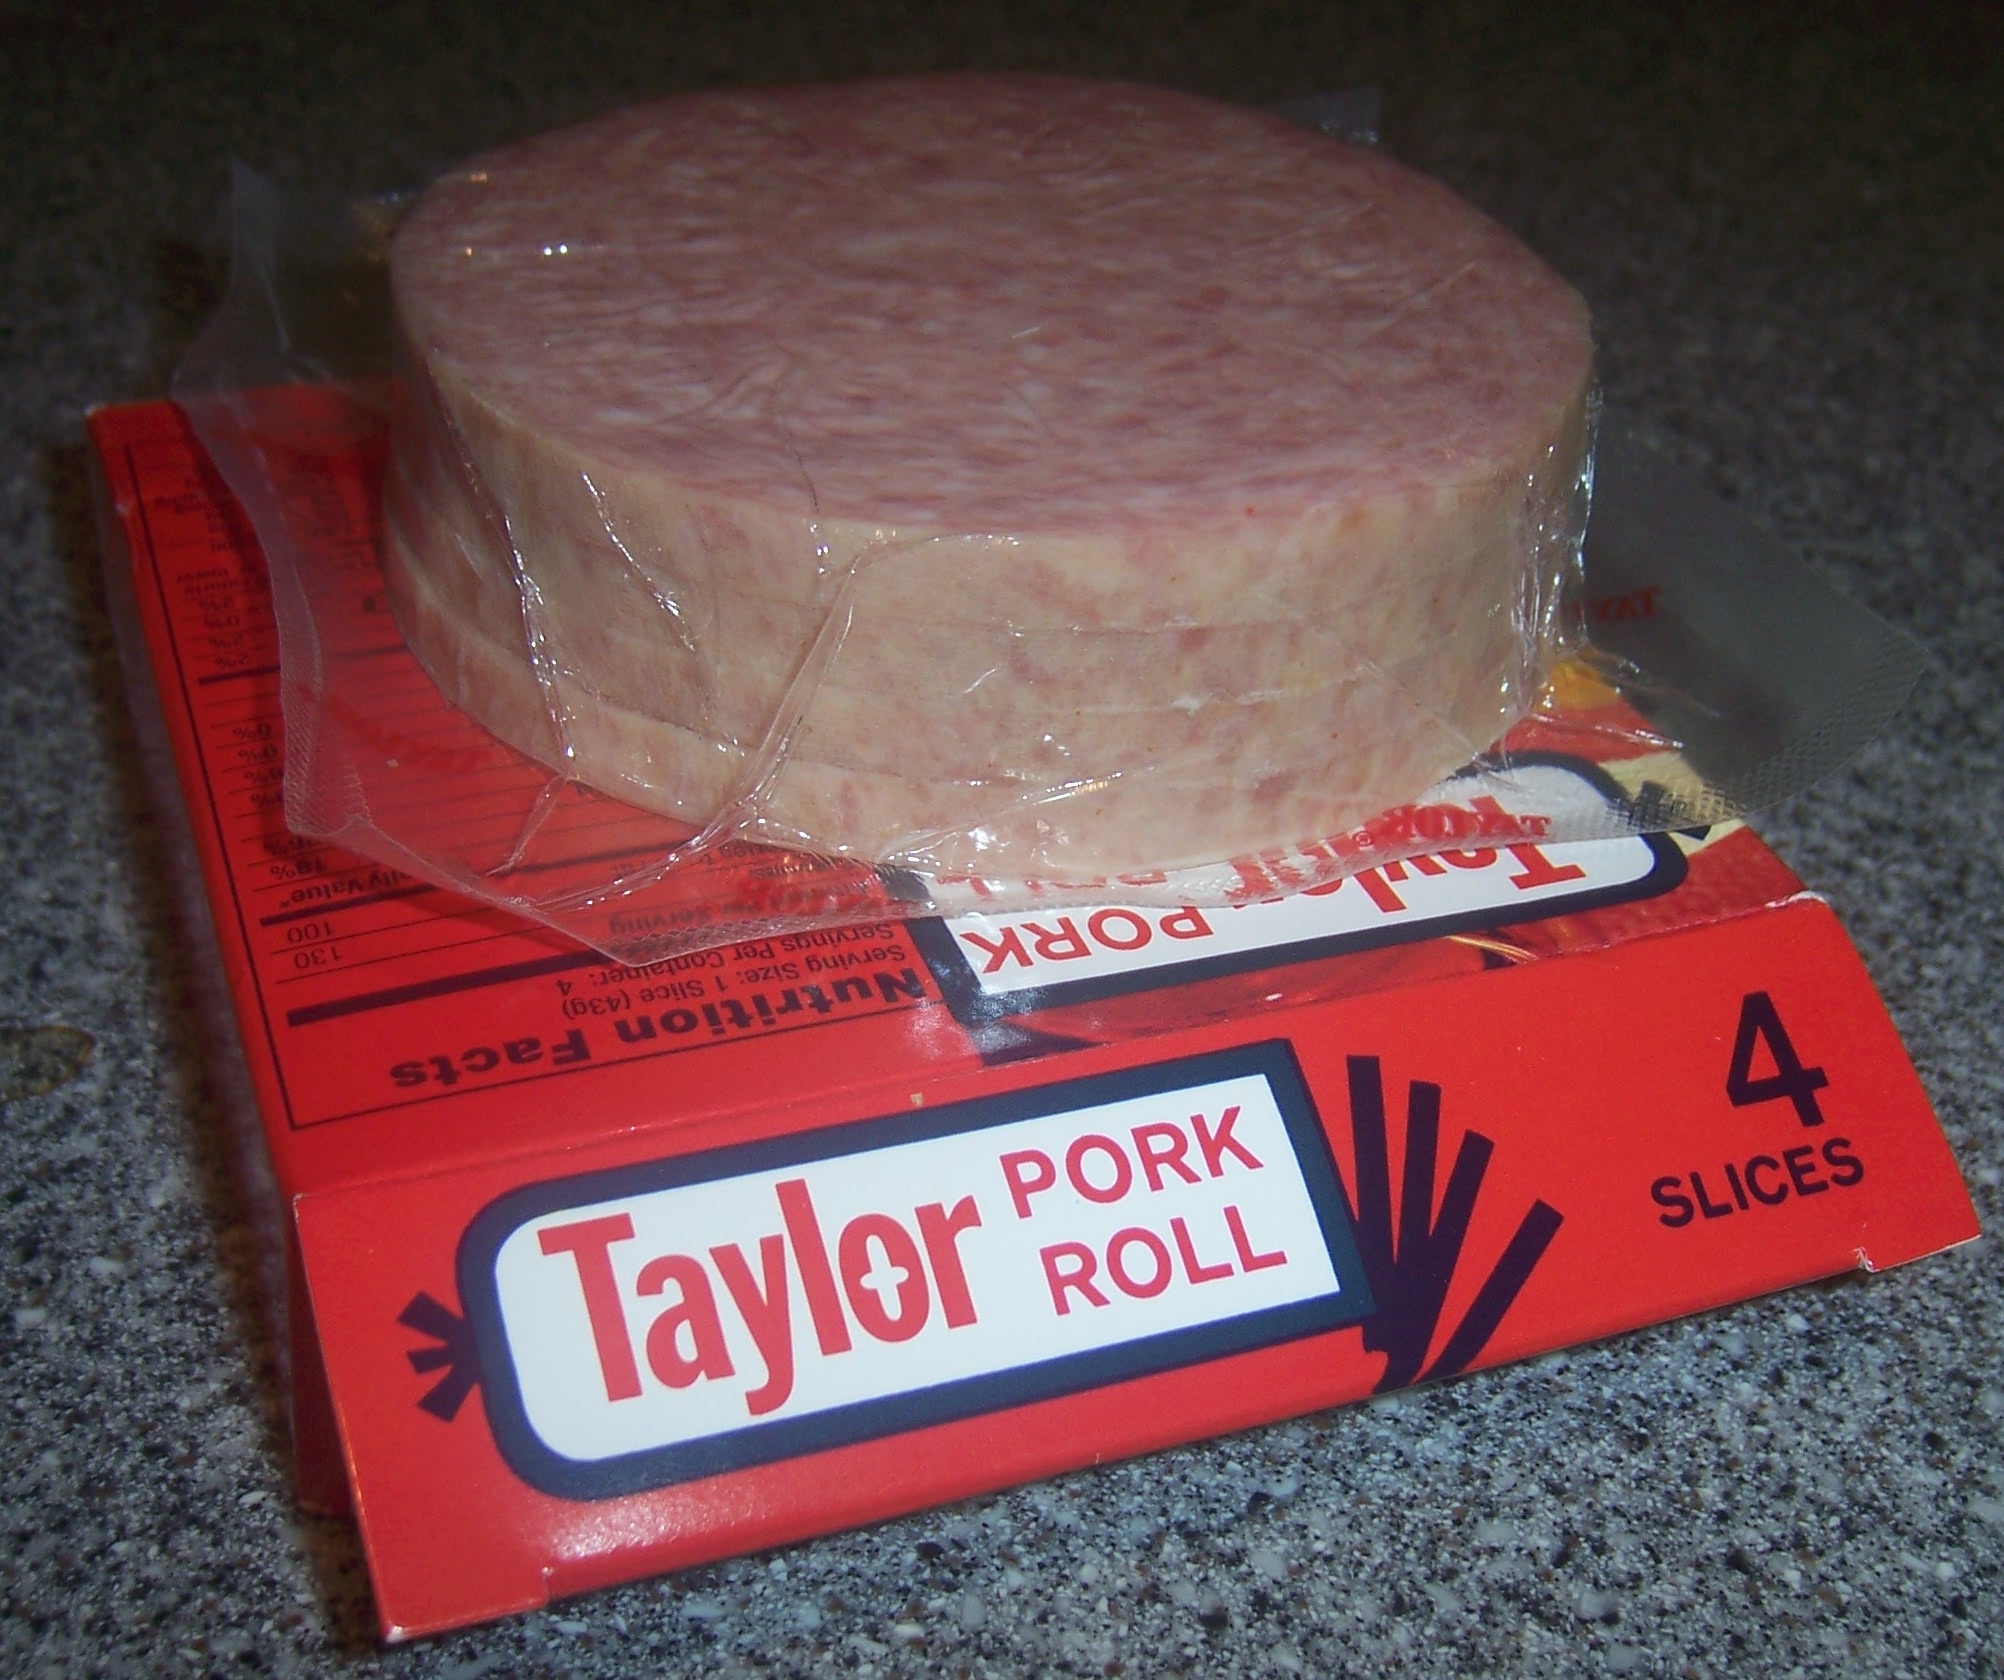 Taylor_pork_roll_slices_on_pkg.JPG